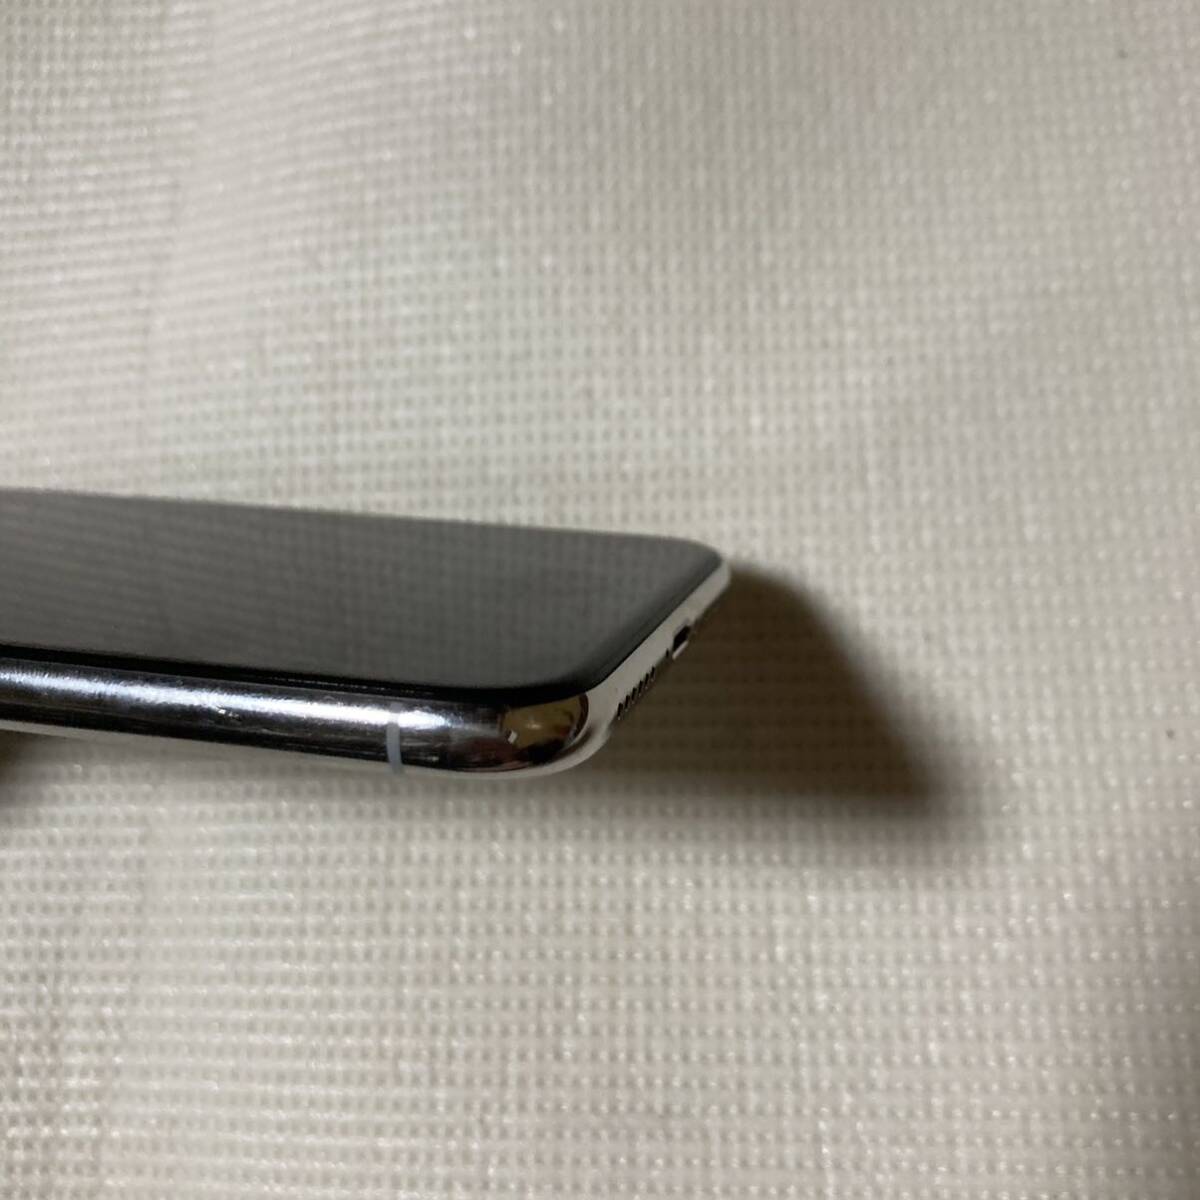 送料無料 SIMフリー iPhoneX 64GB シルバー バッテリー最大容量100% SIMロック解除済 中古品の画像4